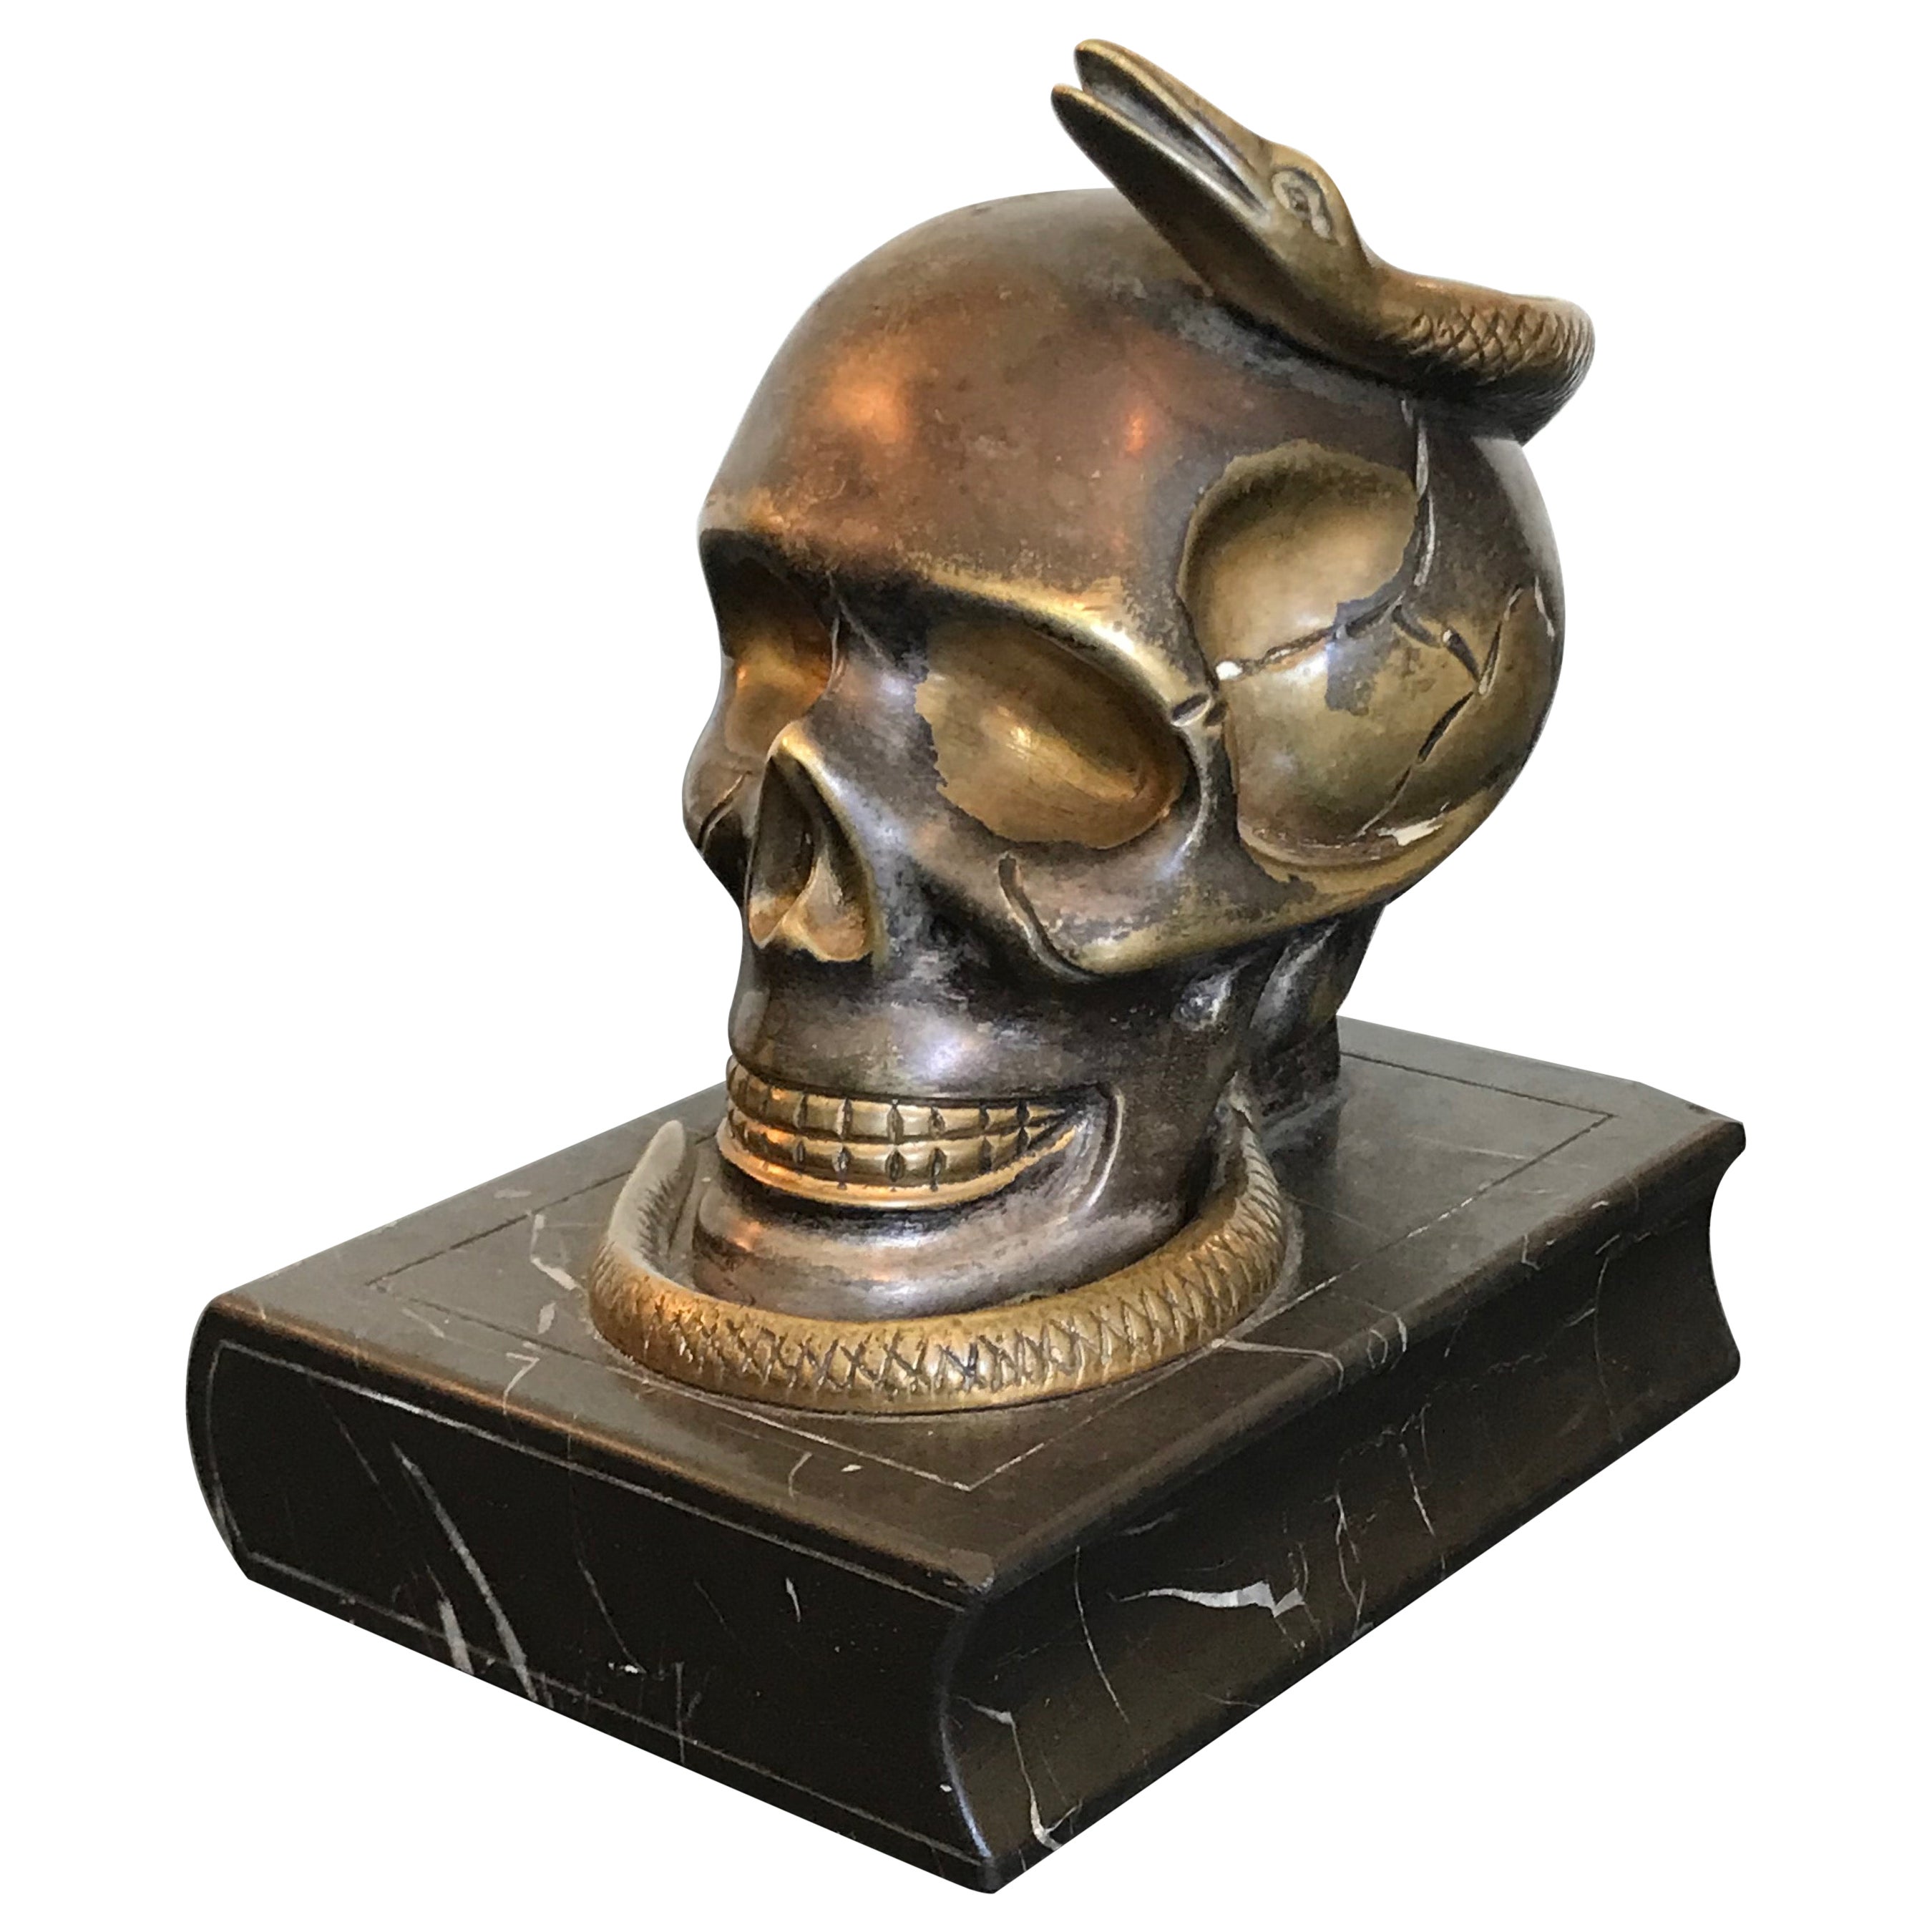 Objet d'Art Bronze Skull with Snake, Signed 